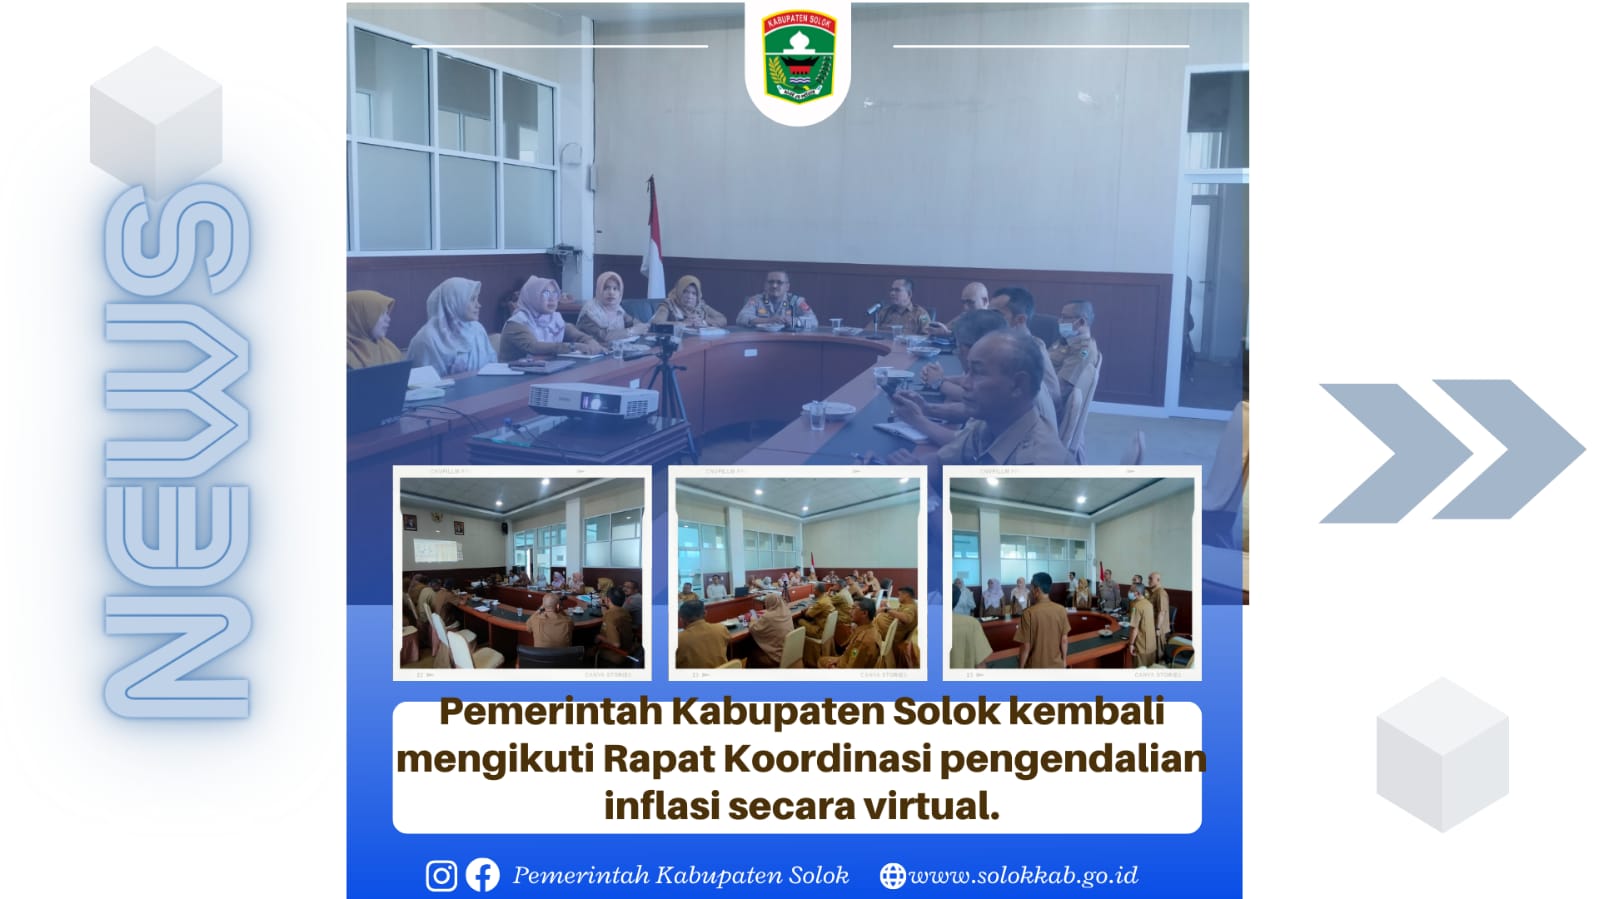 Pemerintah Kabupaten Solok kembali mengikuti Rapat Koordinasi pengendalian inflasi secara virtual.